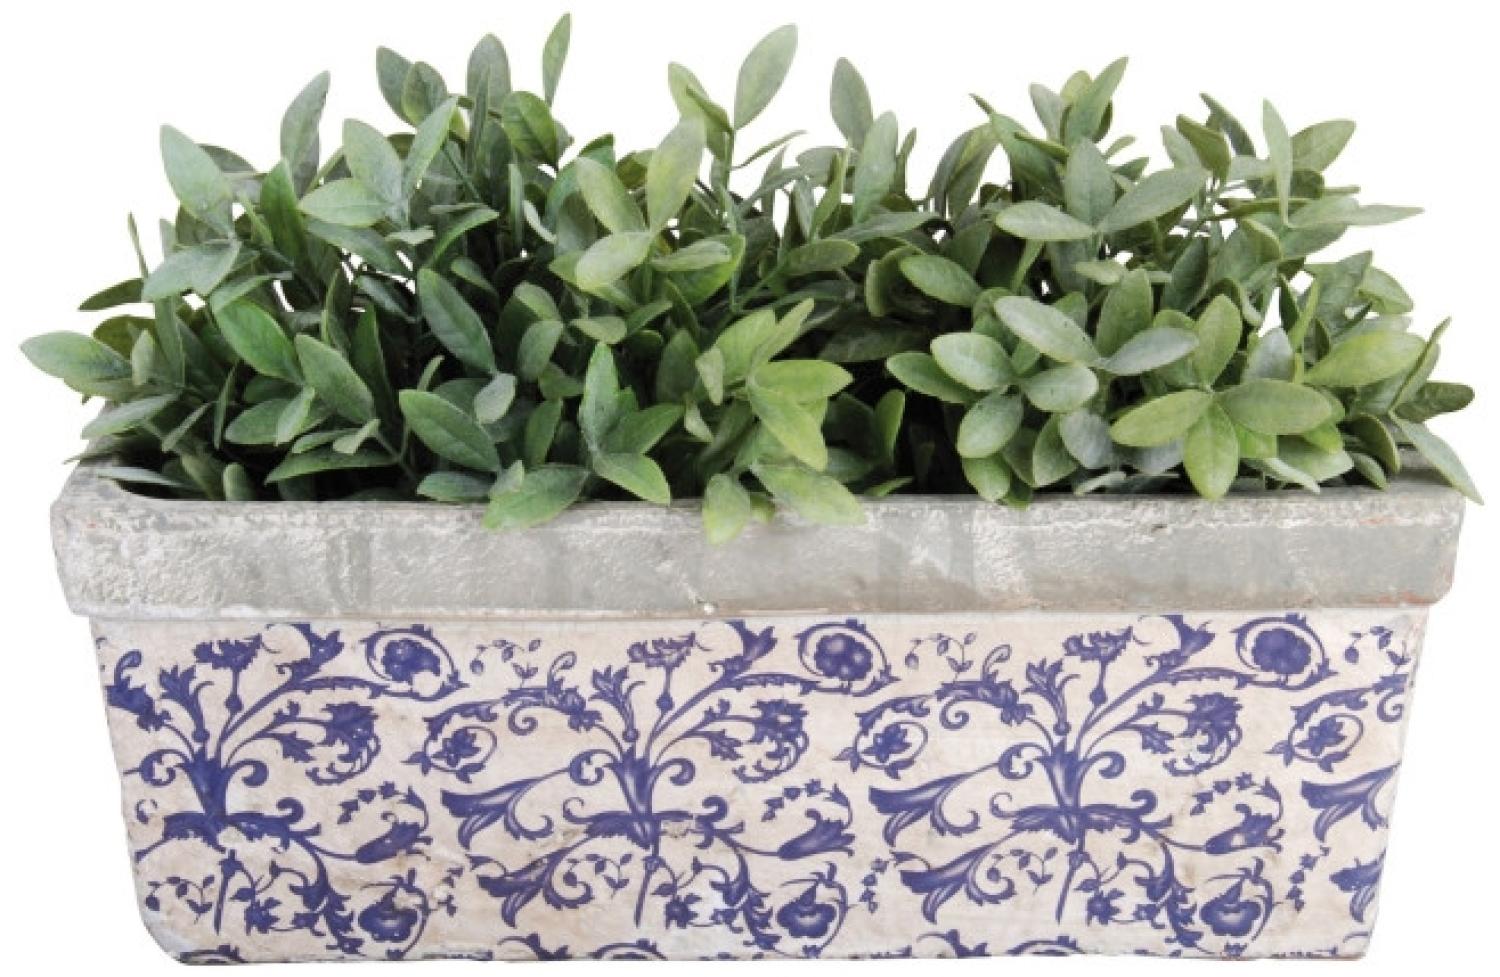 5 Stück Esschert Design Balkonkasten, Blumenkasten aus Keramik in blau-weiß, ca. 40 cm x 16 cm x 15 cm Bild 1